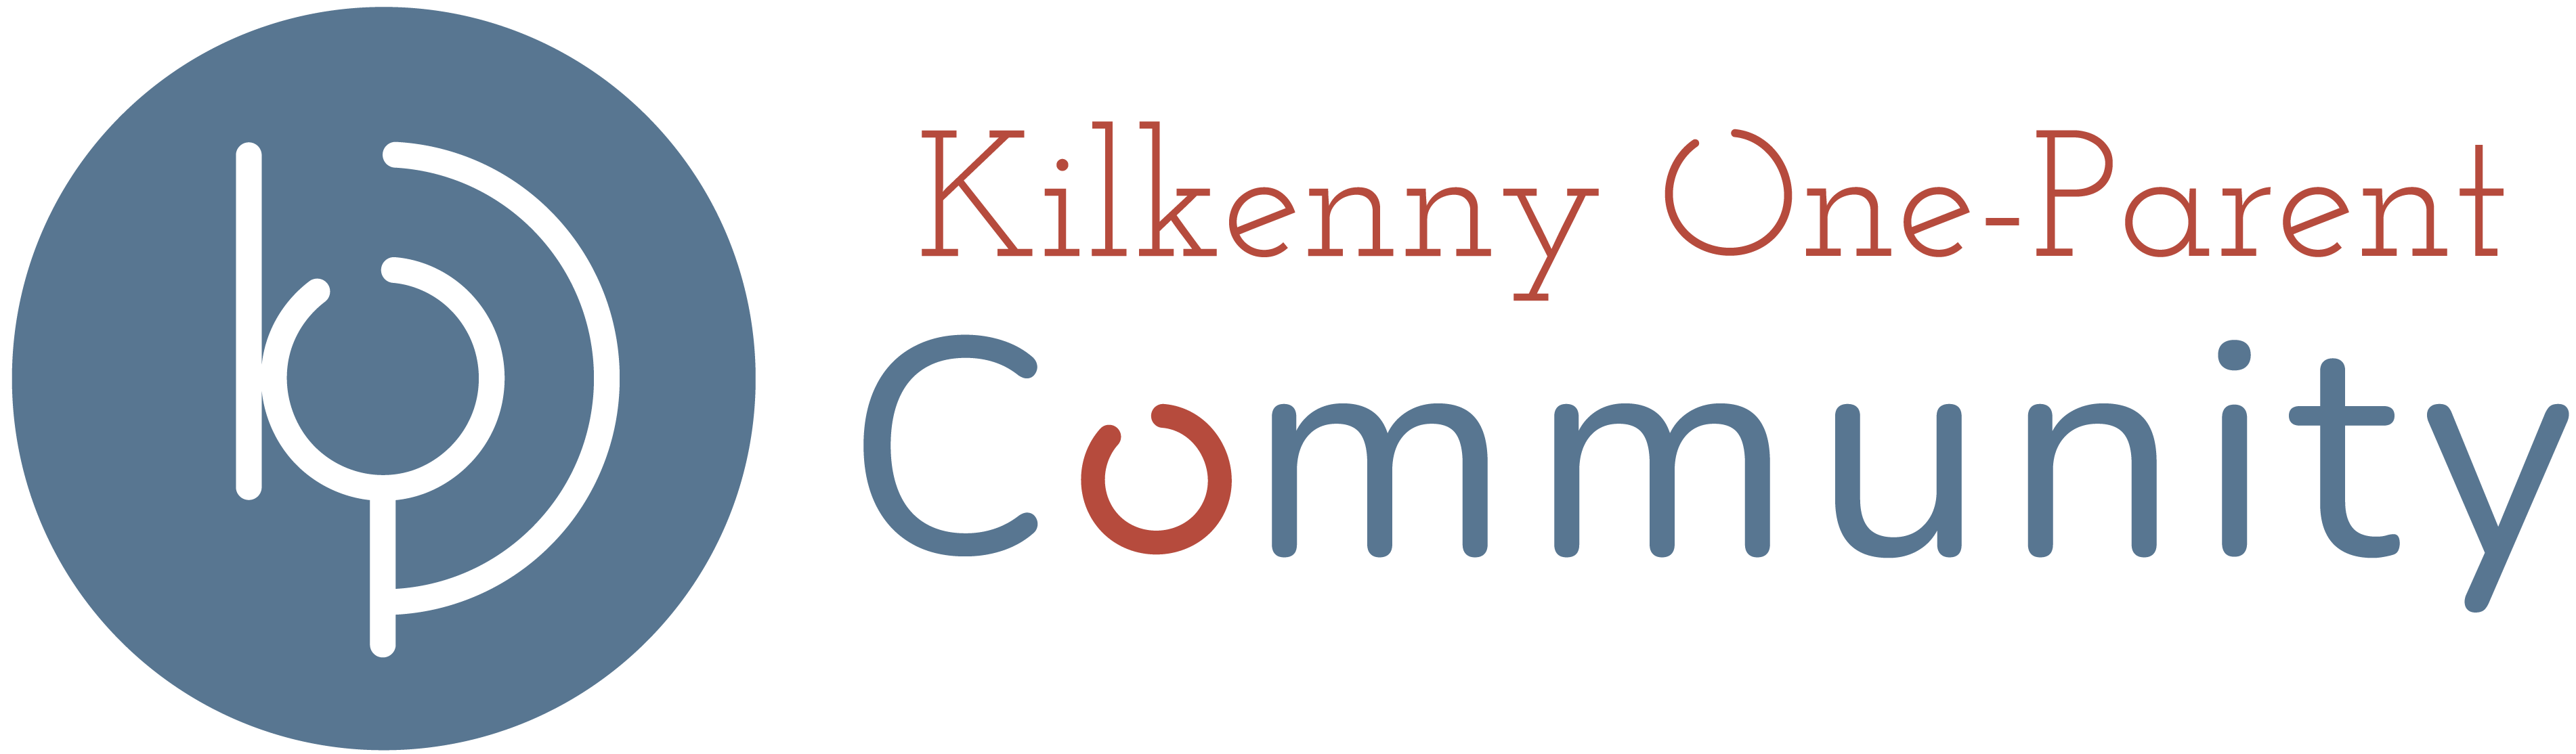 Kilkenny One Parent Community